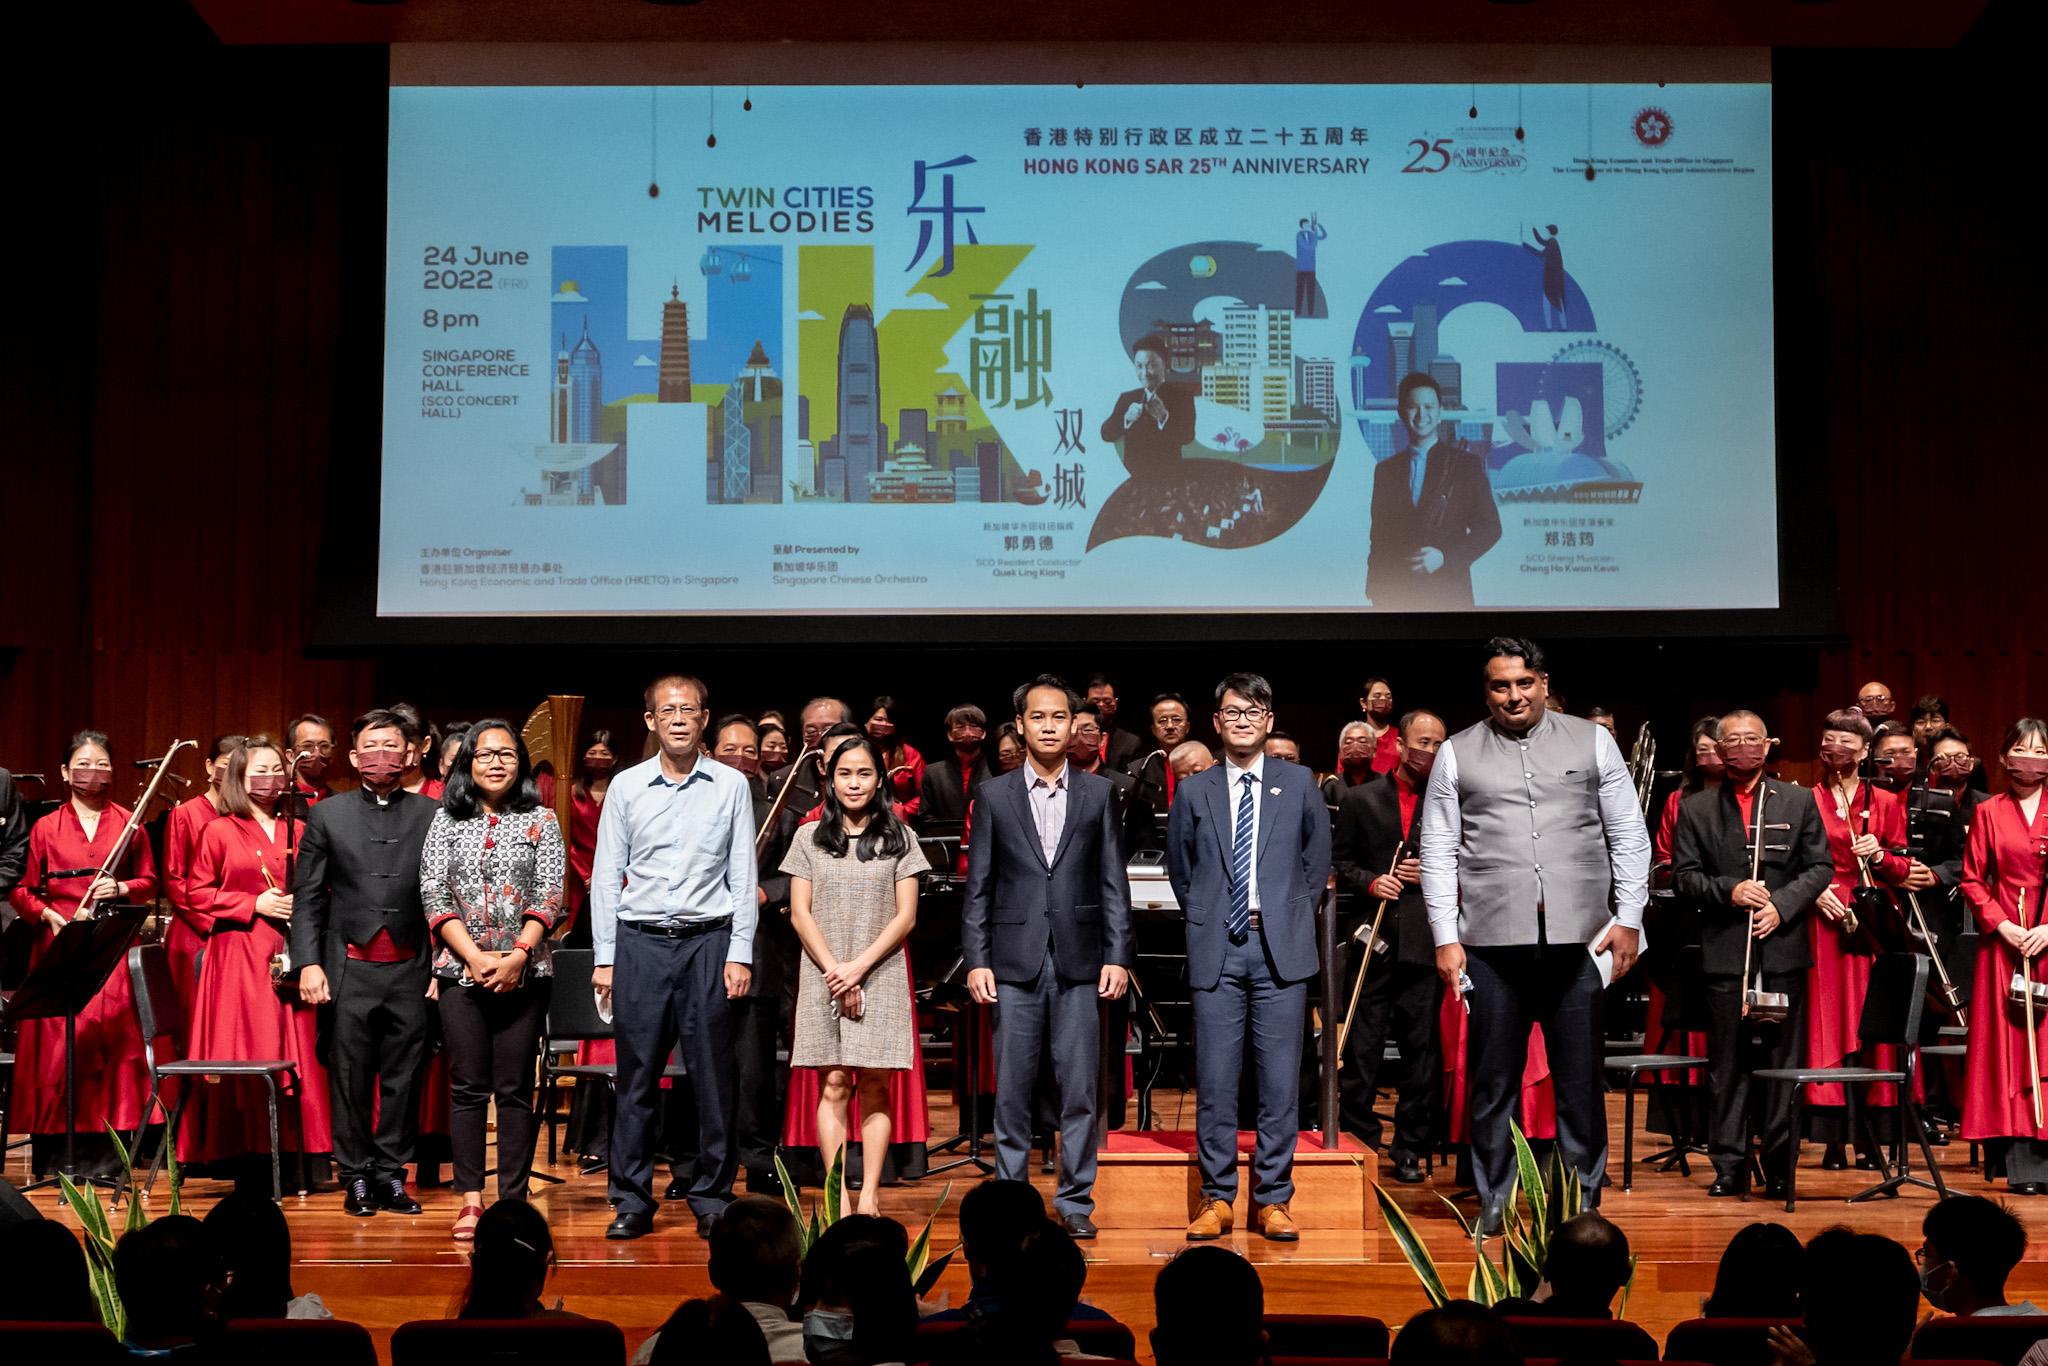 為慶祝香港特別行政區成立二十五周年， 香港駐新加坡經濟貿易辦事處（駐新加坡經貿辦）今日（六月二十四日）舉行「樂融雙城」中樂音樂會。圖示駐新加坡經貿辦處長黃俊濤（右二）、印尼駐新加坡大使館公使銜參贊 Hastin Dumadi（右六）、印度駐新加坡最高專員公署參贊 Nitinjeet Singh（右一）、老撾駐新加坡大使館二等秘書 Nikone Keopanya（右三）及Malaychanh Phetxomphou（右四），及新加坡中國文化中心副主任周政（右五）合照。